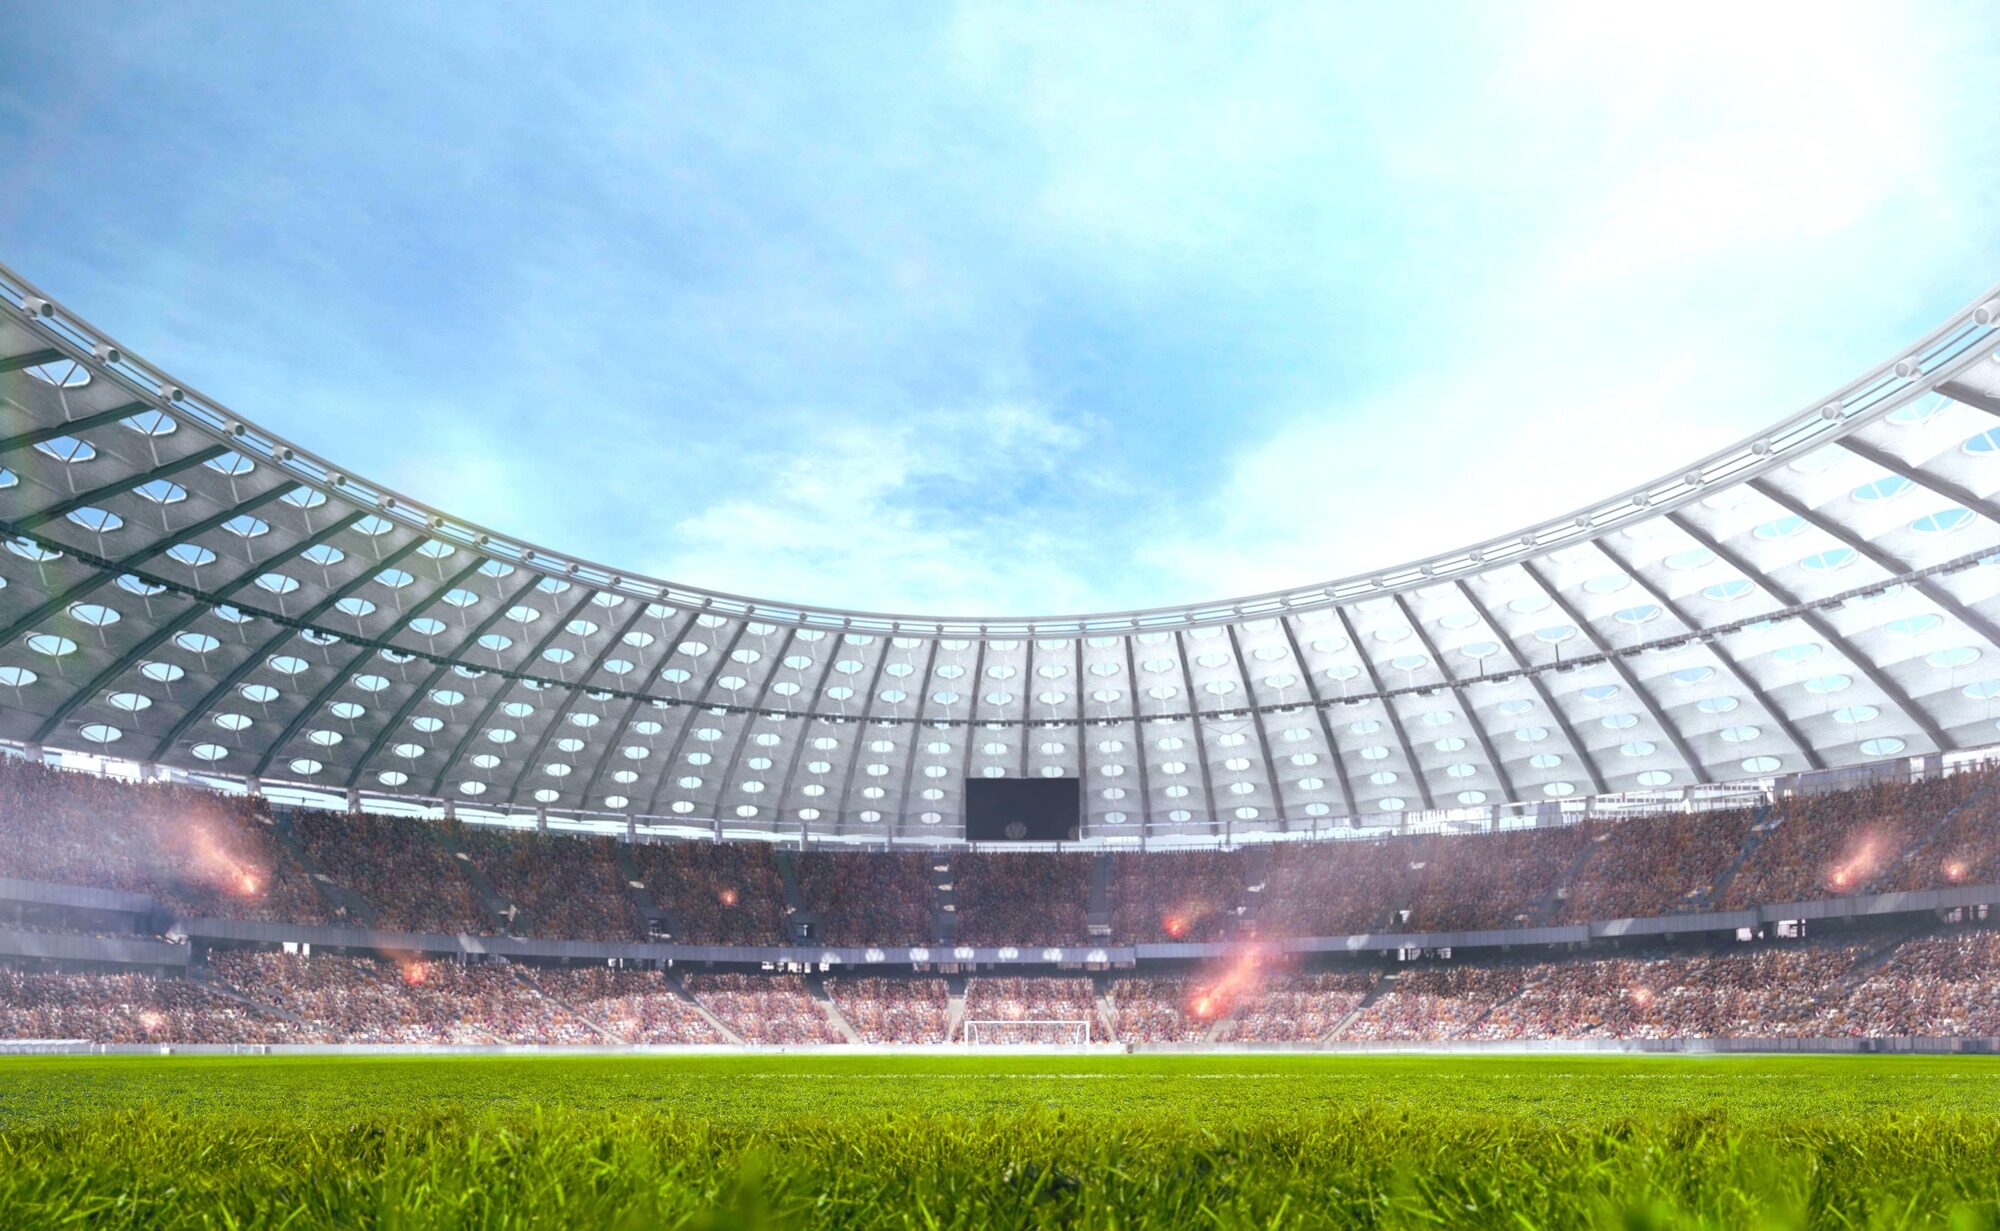 ¿Que impacto trae una Copa Mundial en el sector inmobiliario del país anfitrión?